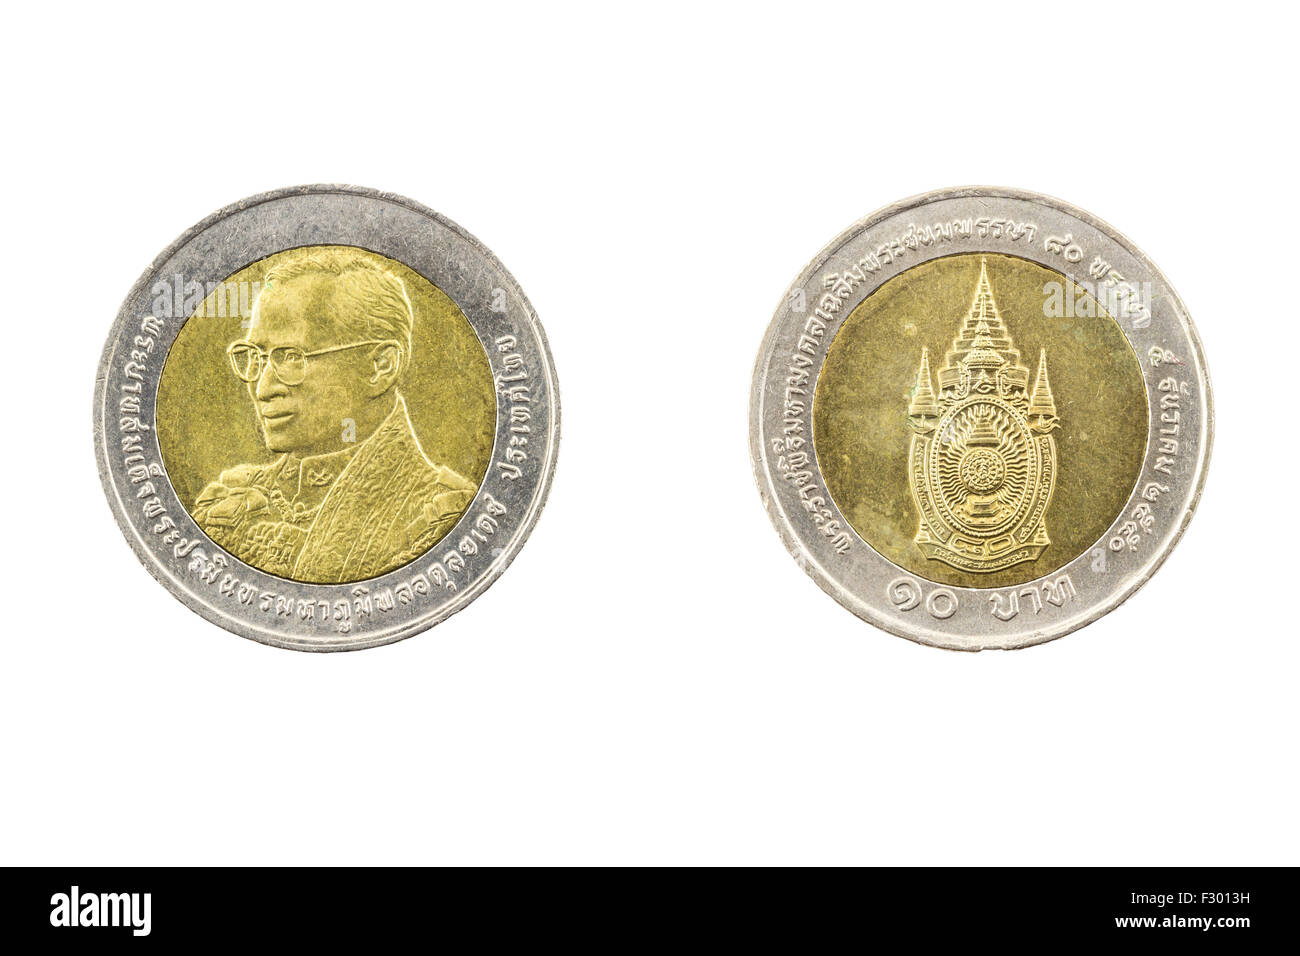 Thailand Ten Baht Coin 2007 80th Birthday King Rama9 on White Background Stock Photo